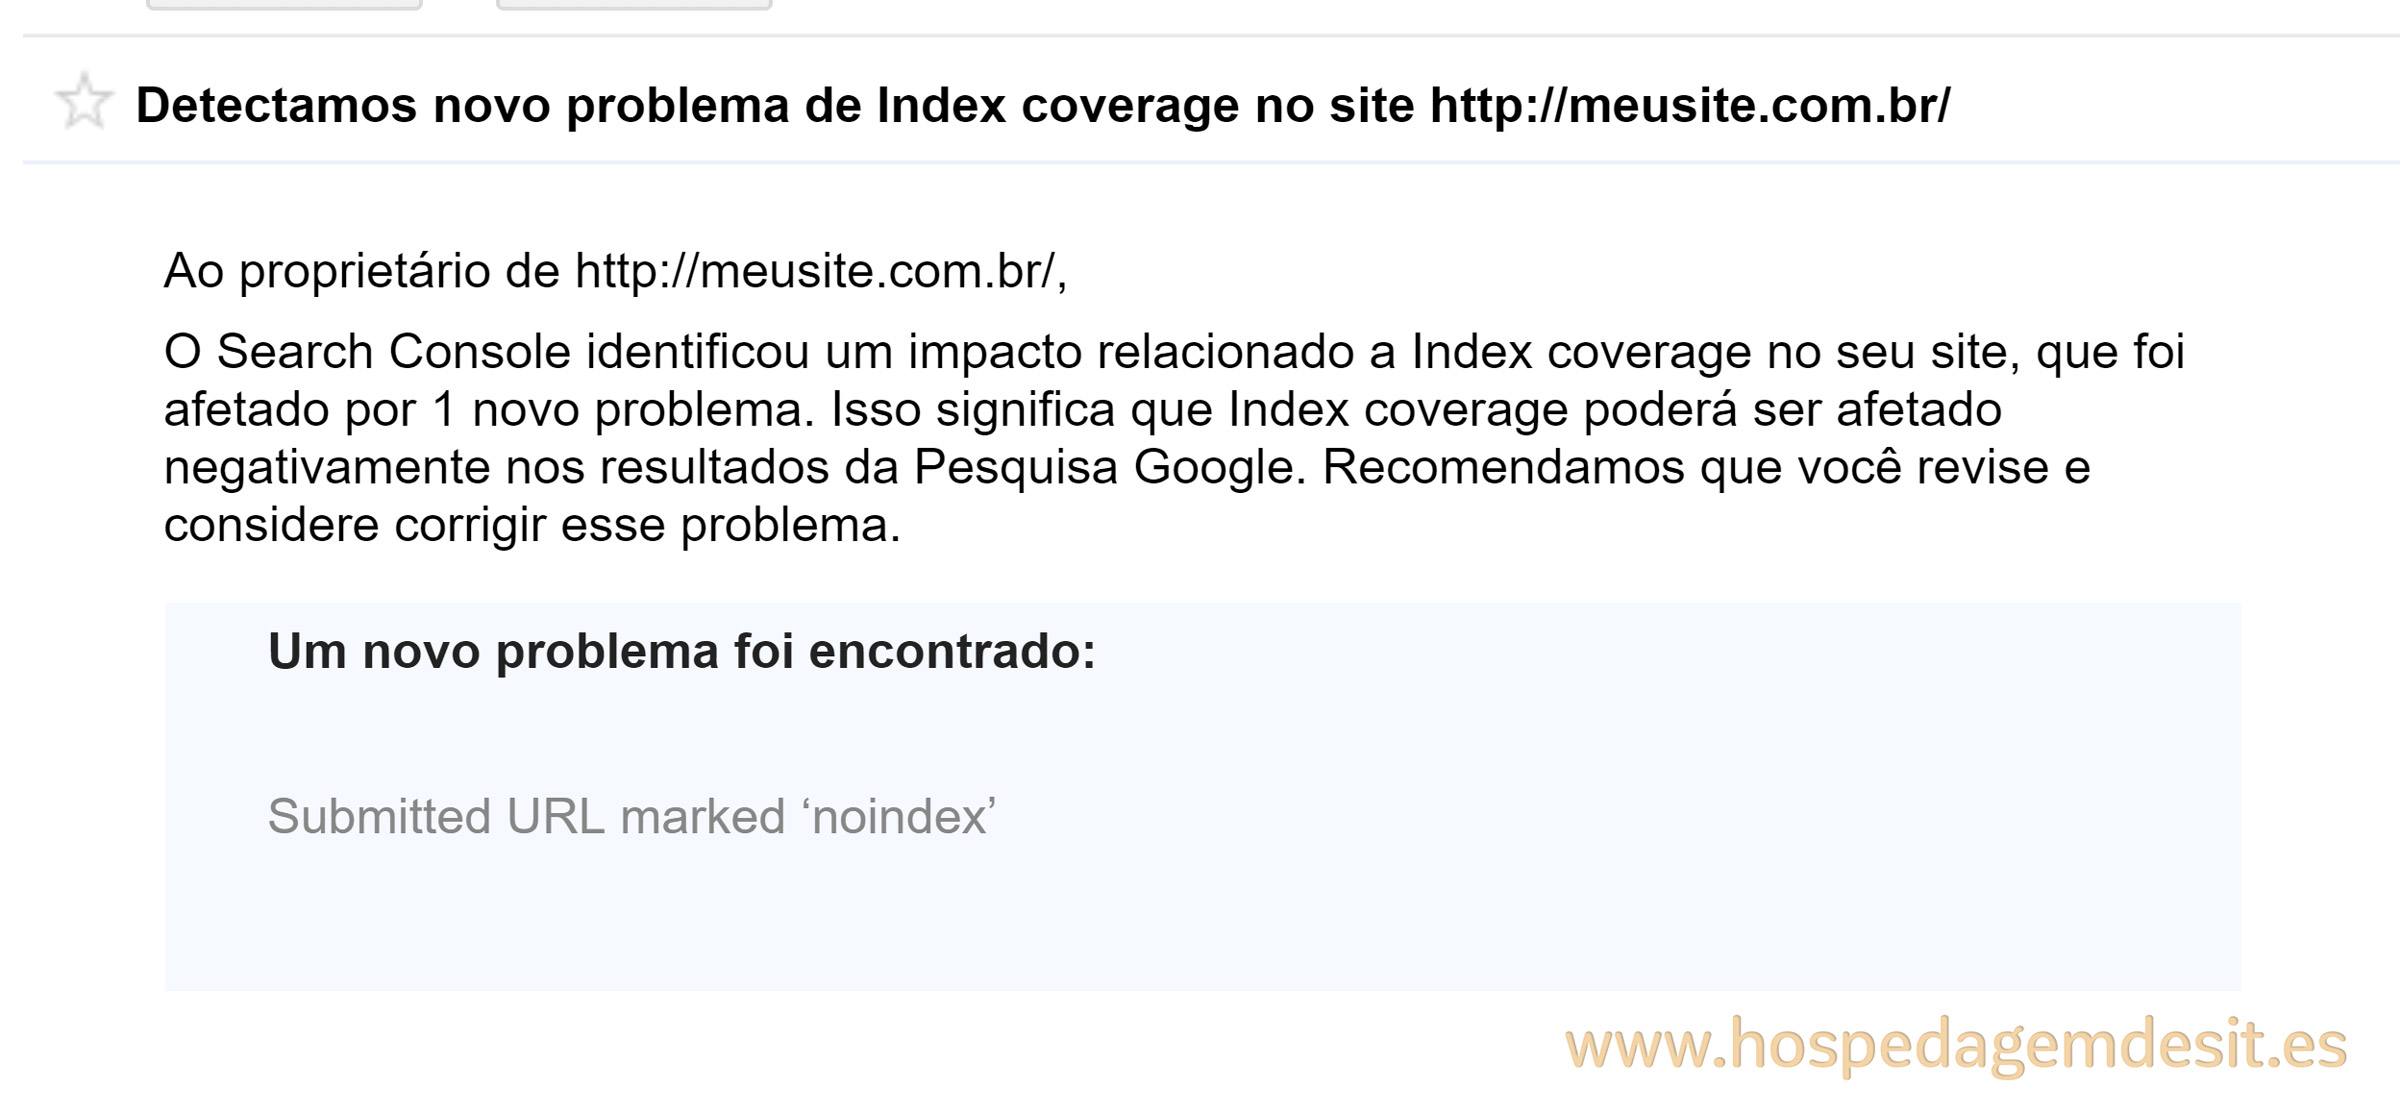 erro de index coverage url marcada como noindex